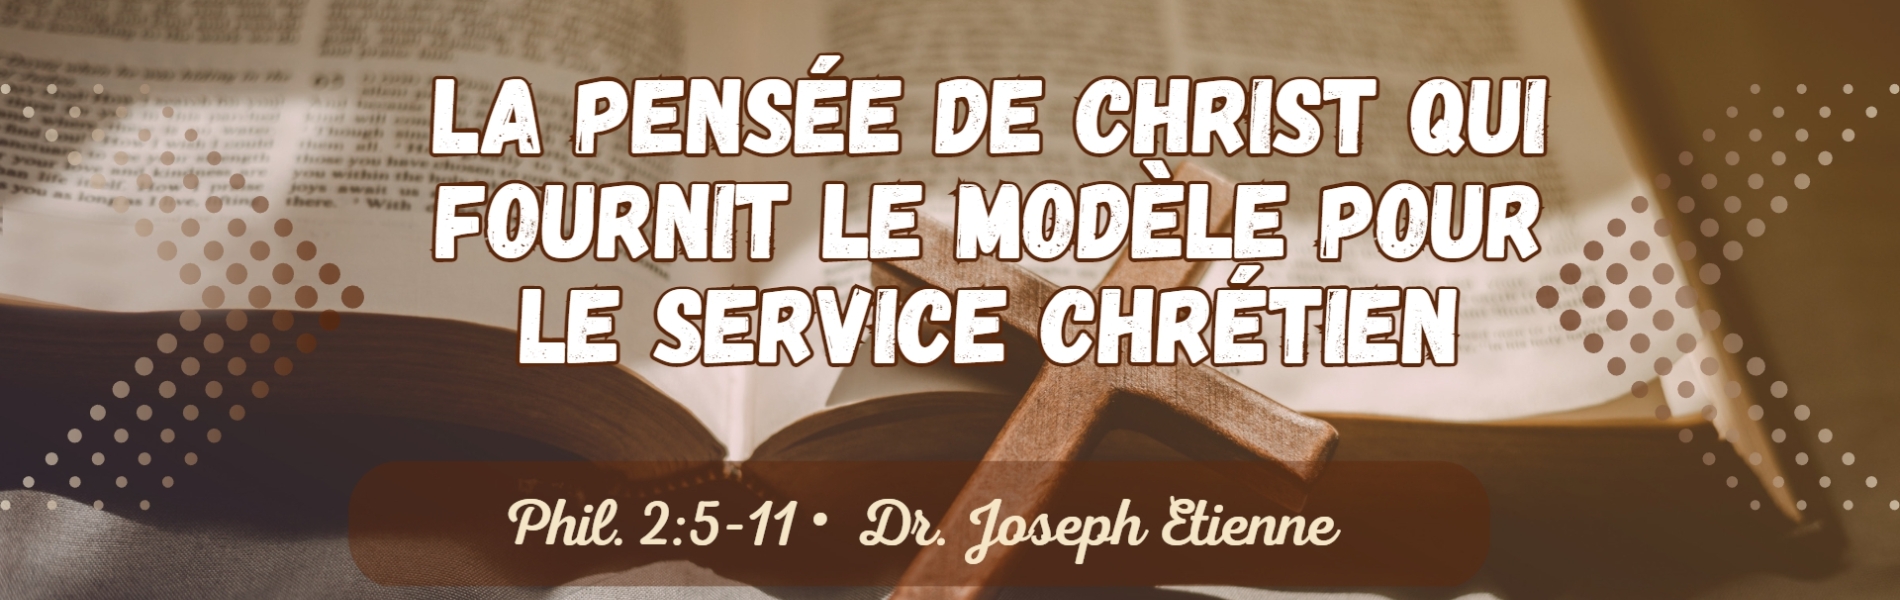 La pensée de Christ: Le modèle pour le service chrétien